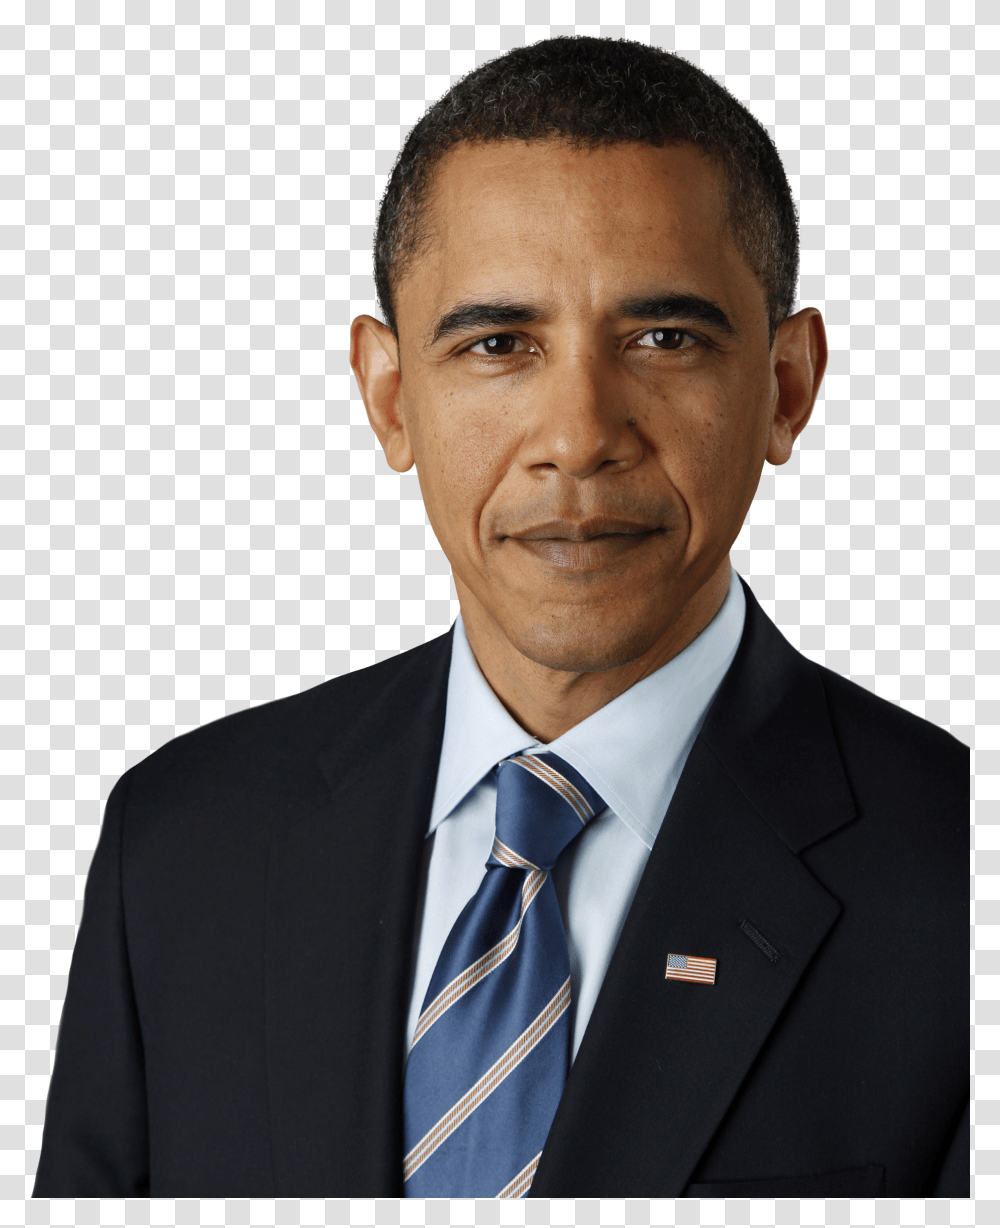 Barack Obama Barack Obama, Tie, Accessories, Suit, Overcoat Transparent Png